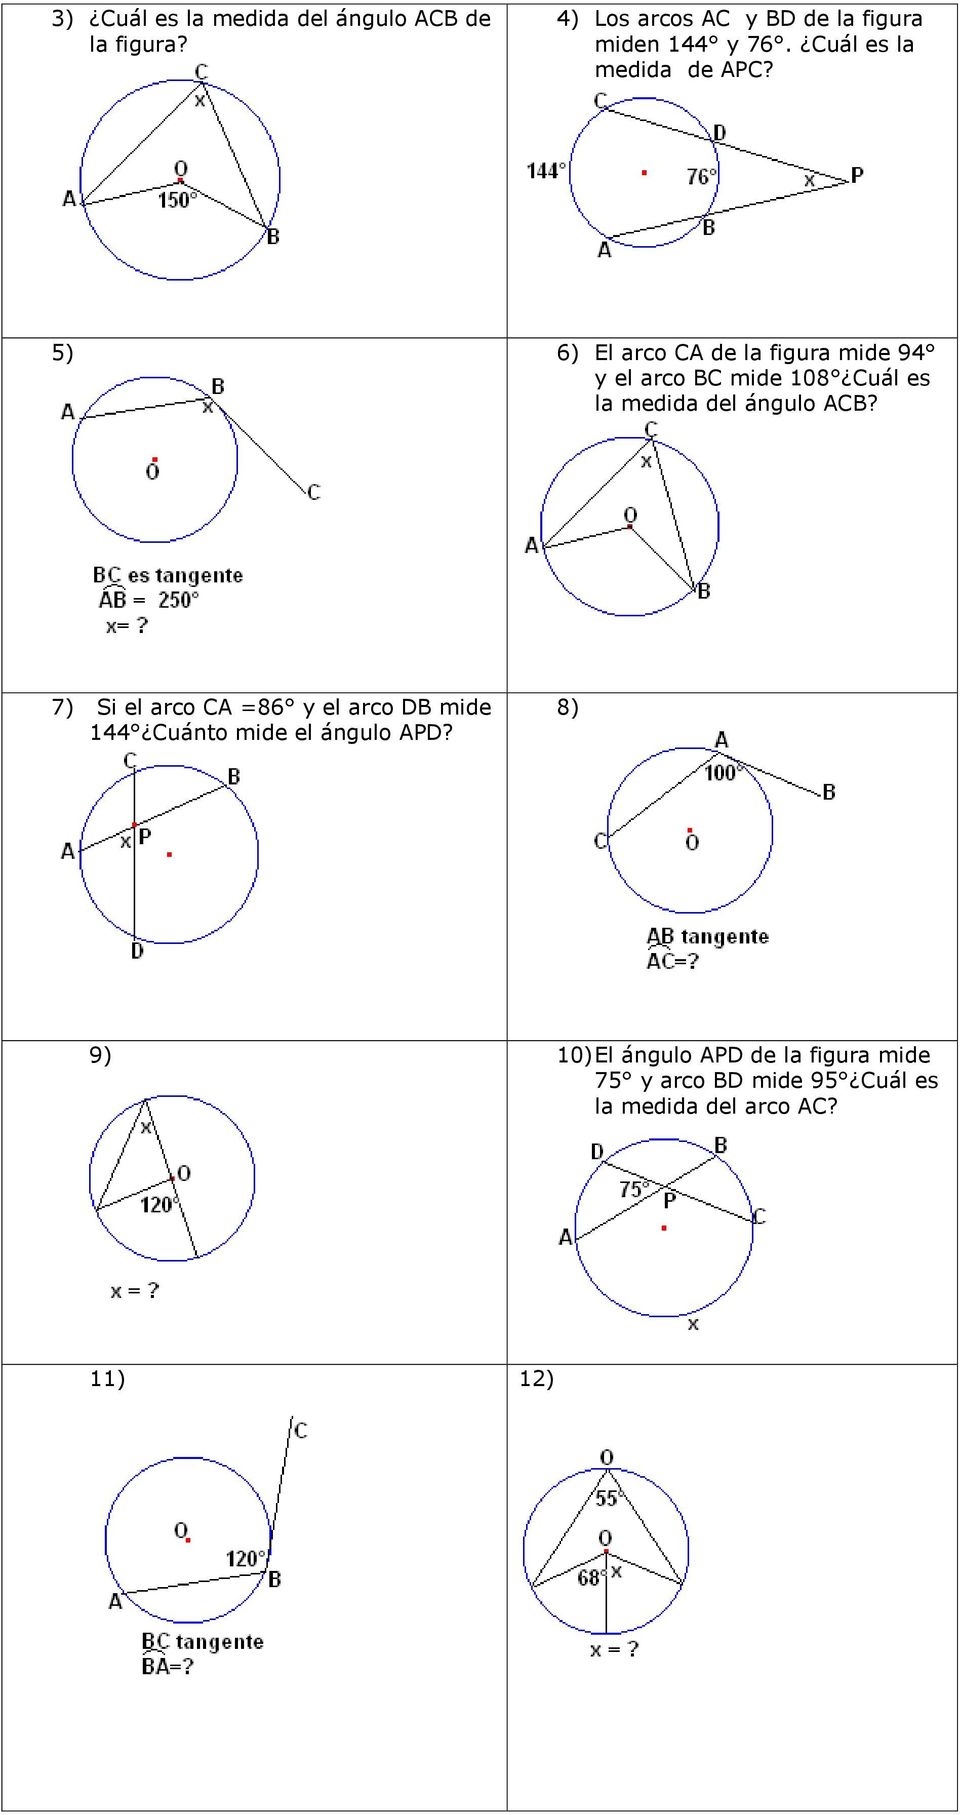 5) 6) El arco de la figura mide 94 y el arco mide 108 uál es la medida del ángulo?